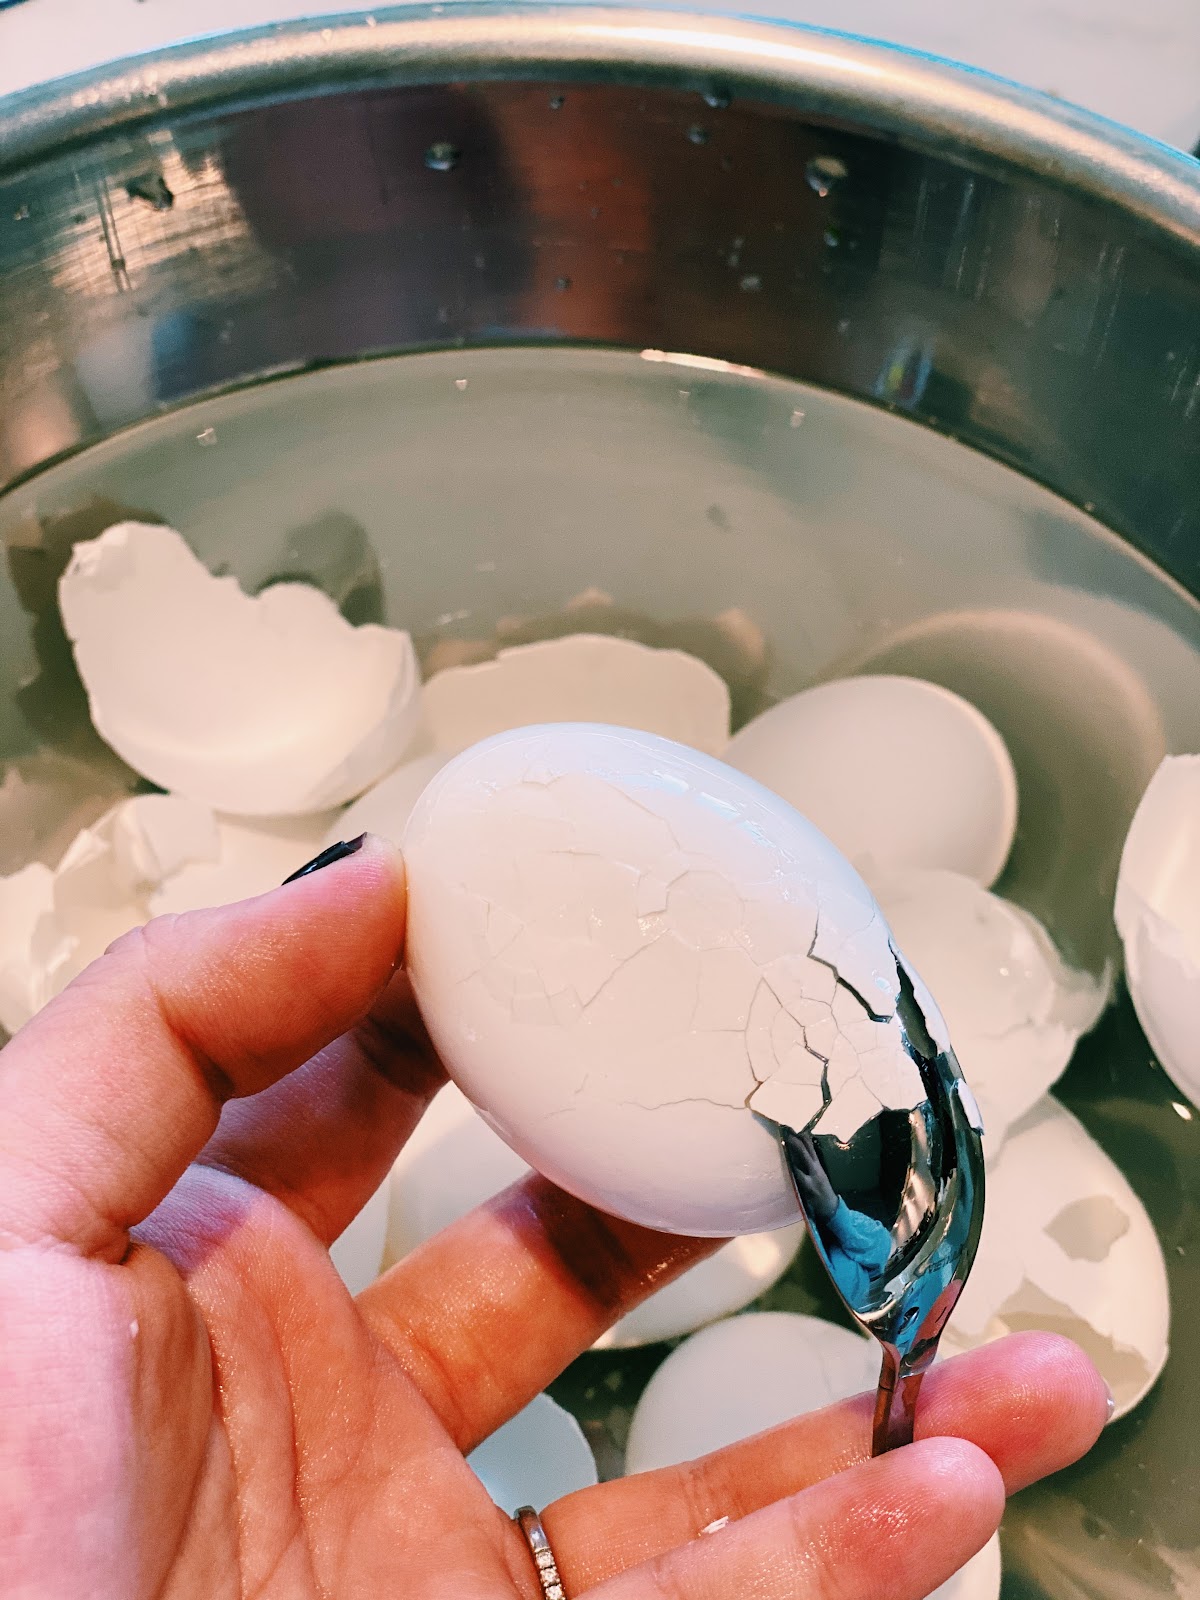 How to peel eggs 